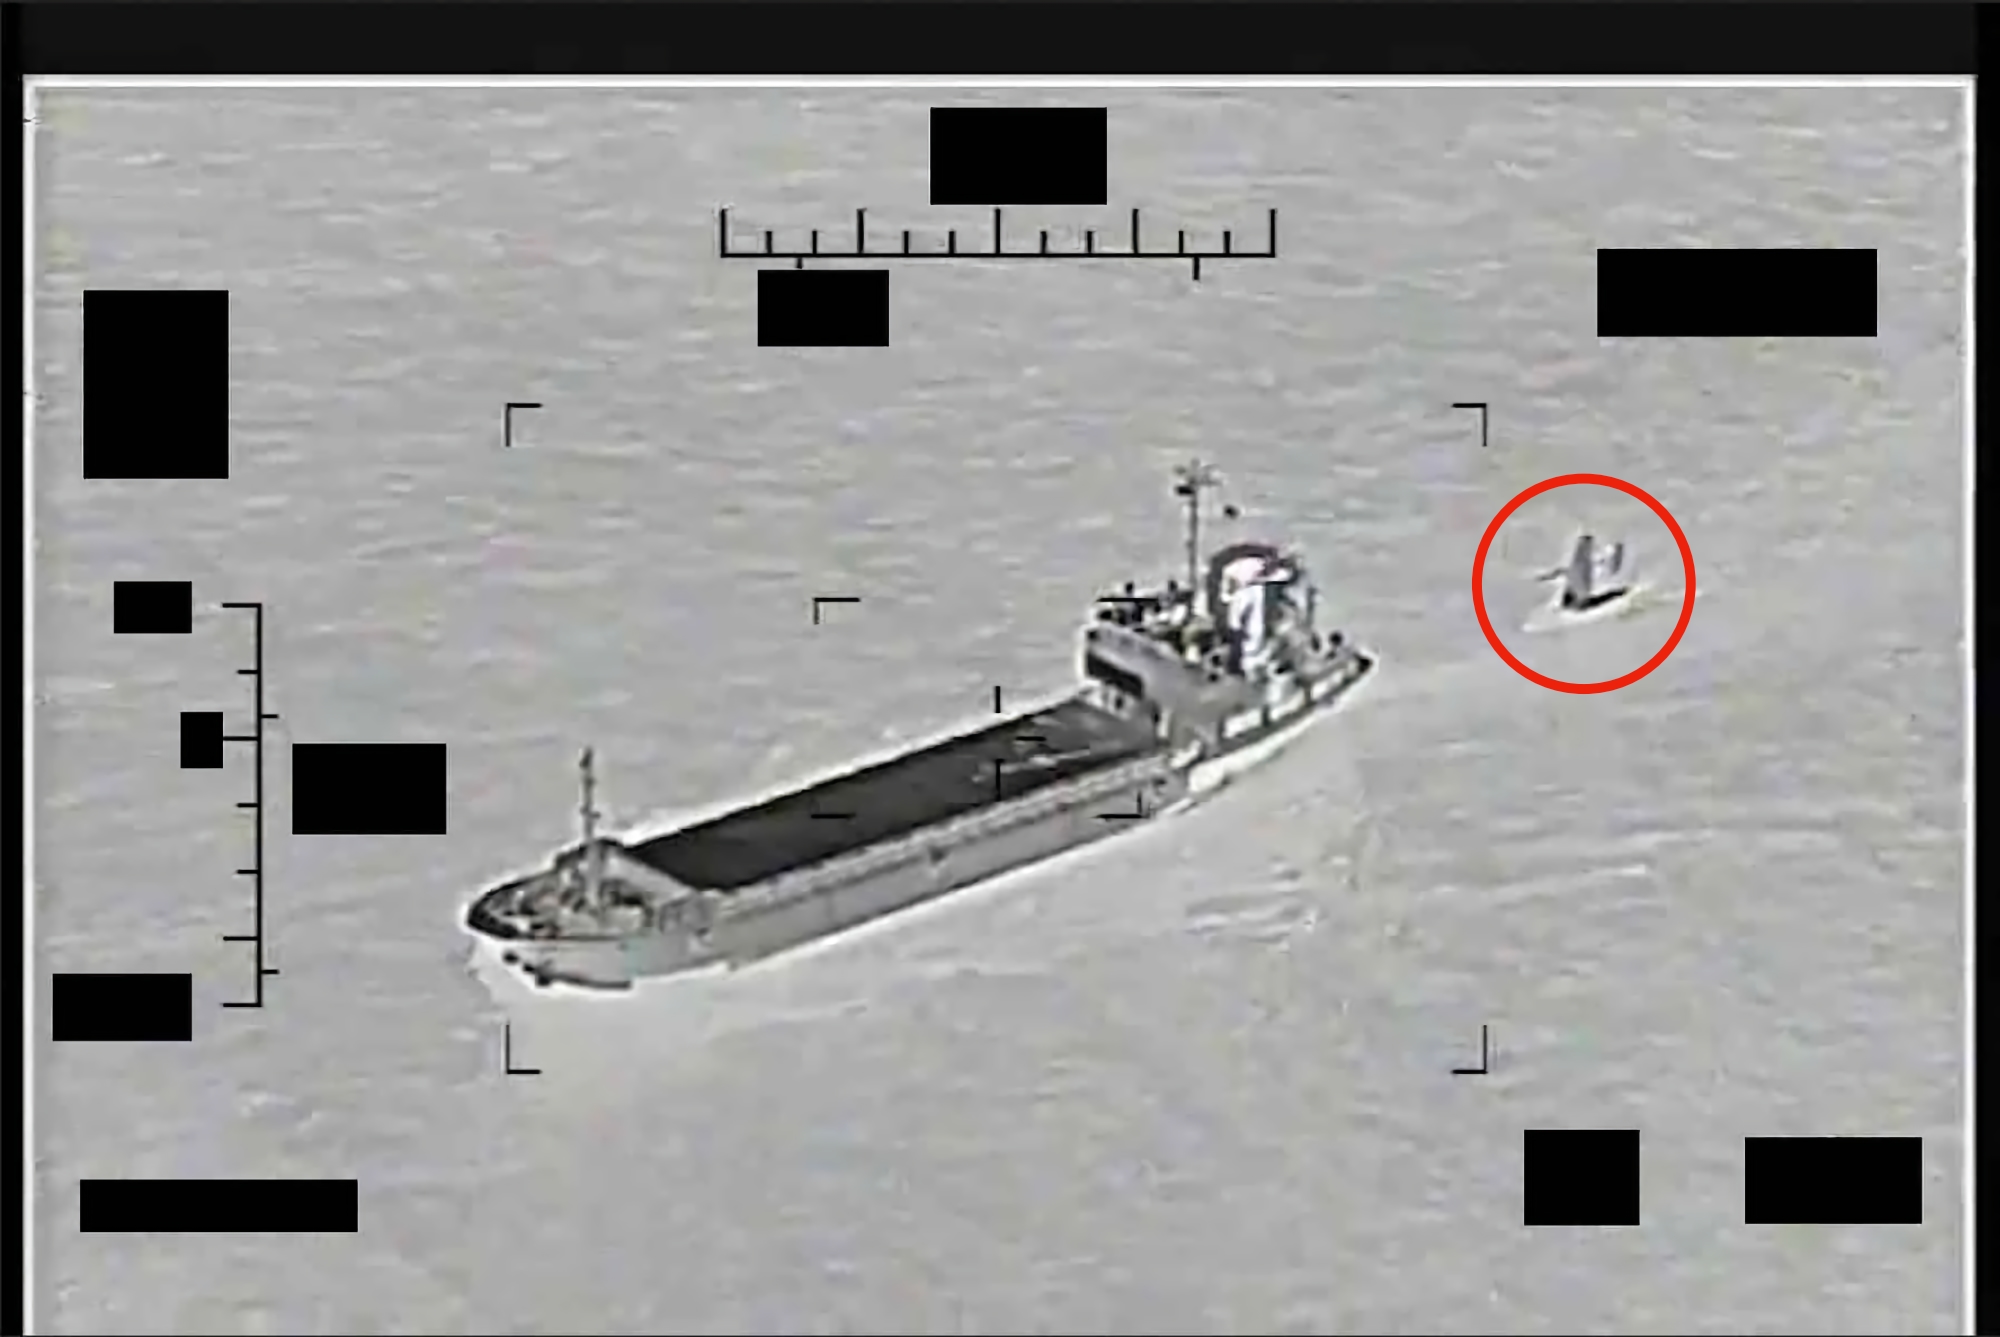 L'Iran ha tentato di sequestrare una nave americana senza pilota Saildrone Explorer nel Golfo Persico, dopo di essa sono stati inviati la motovedetta USS Thunderbolt e l'elicottero MH-60S Sea Hawk